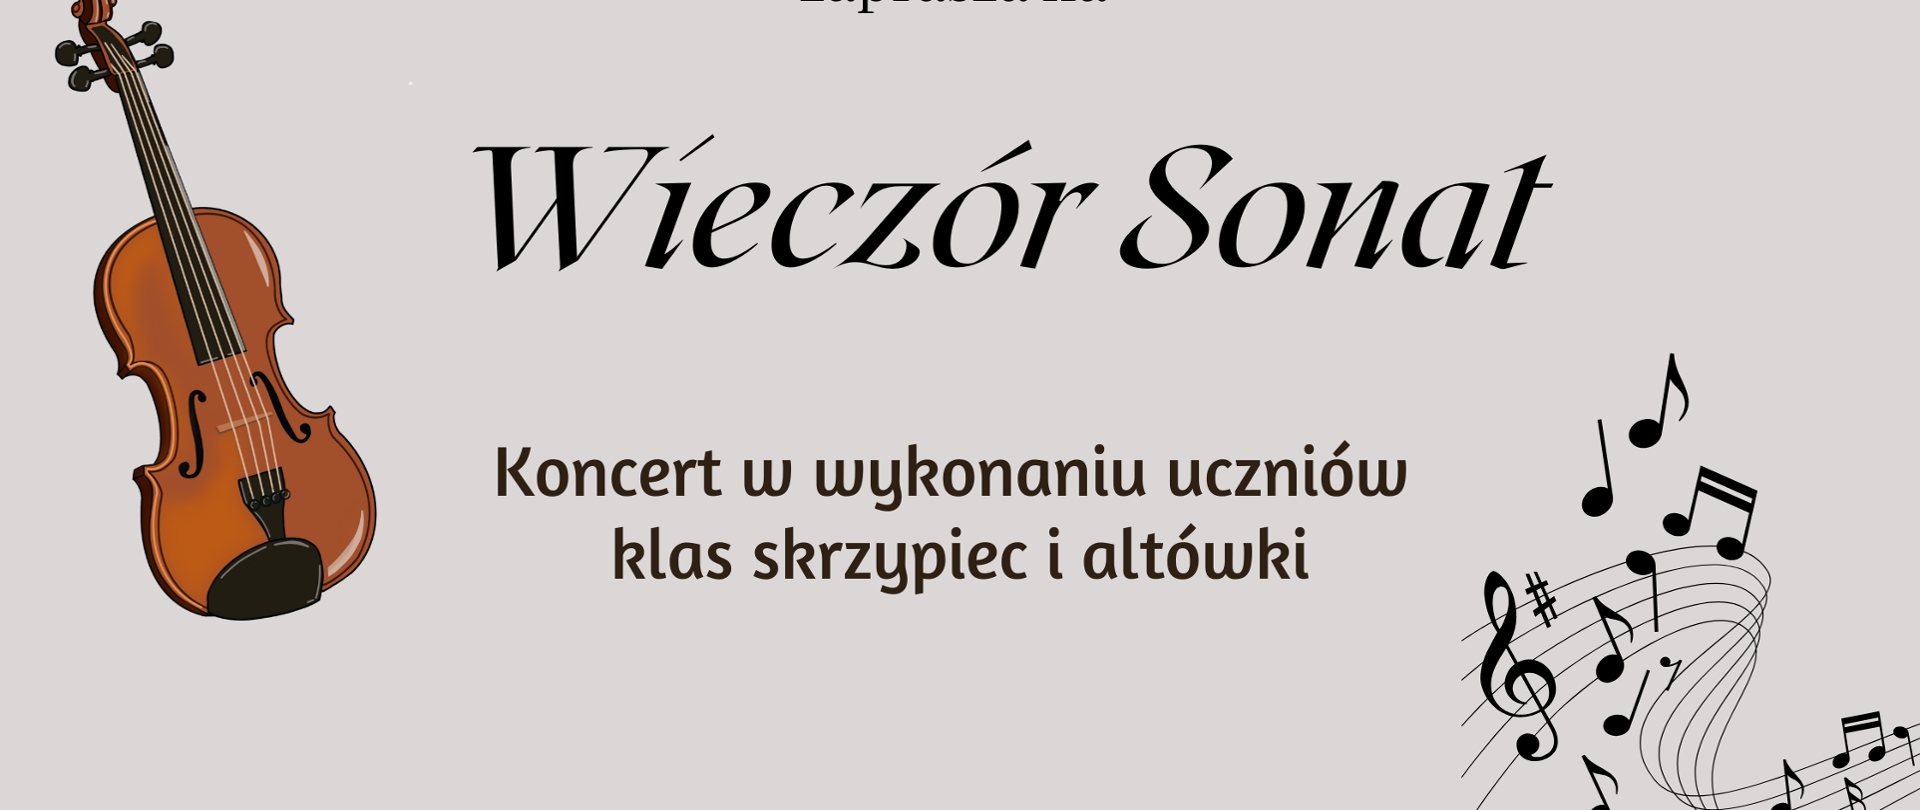 Plakat wieczoru sonat, po lewej grafika skrzypiec brązowa.